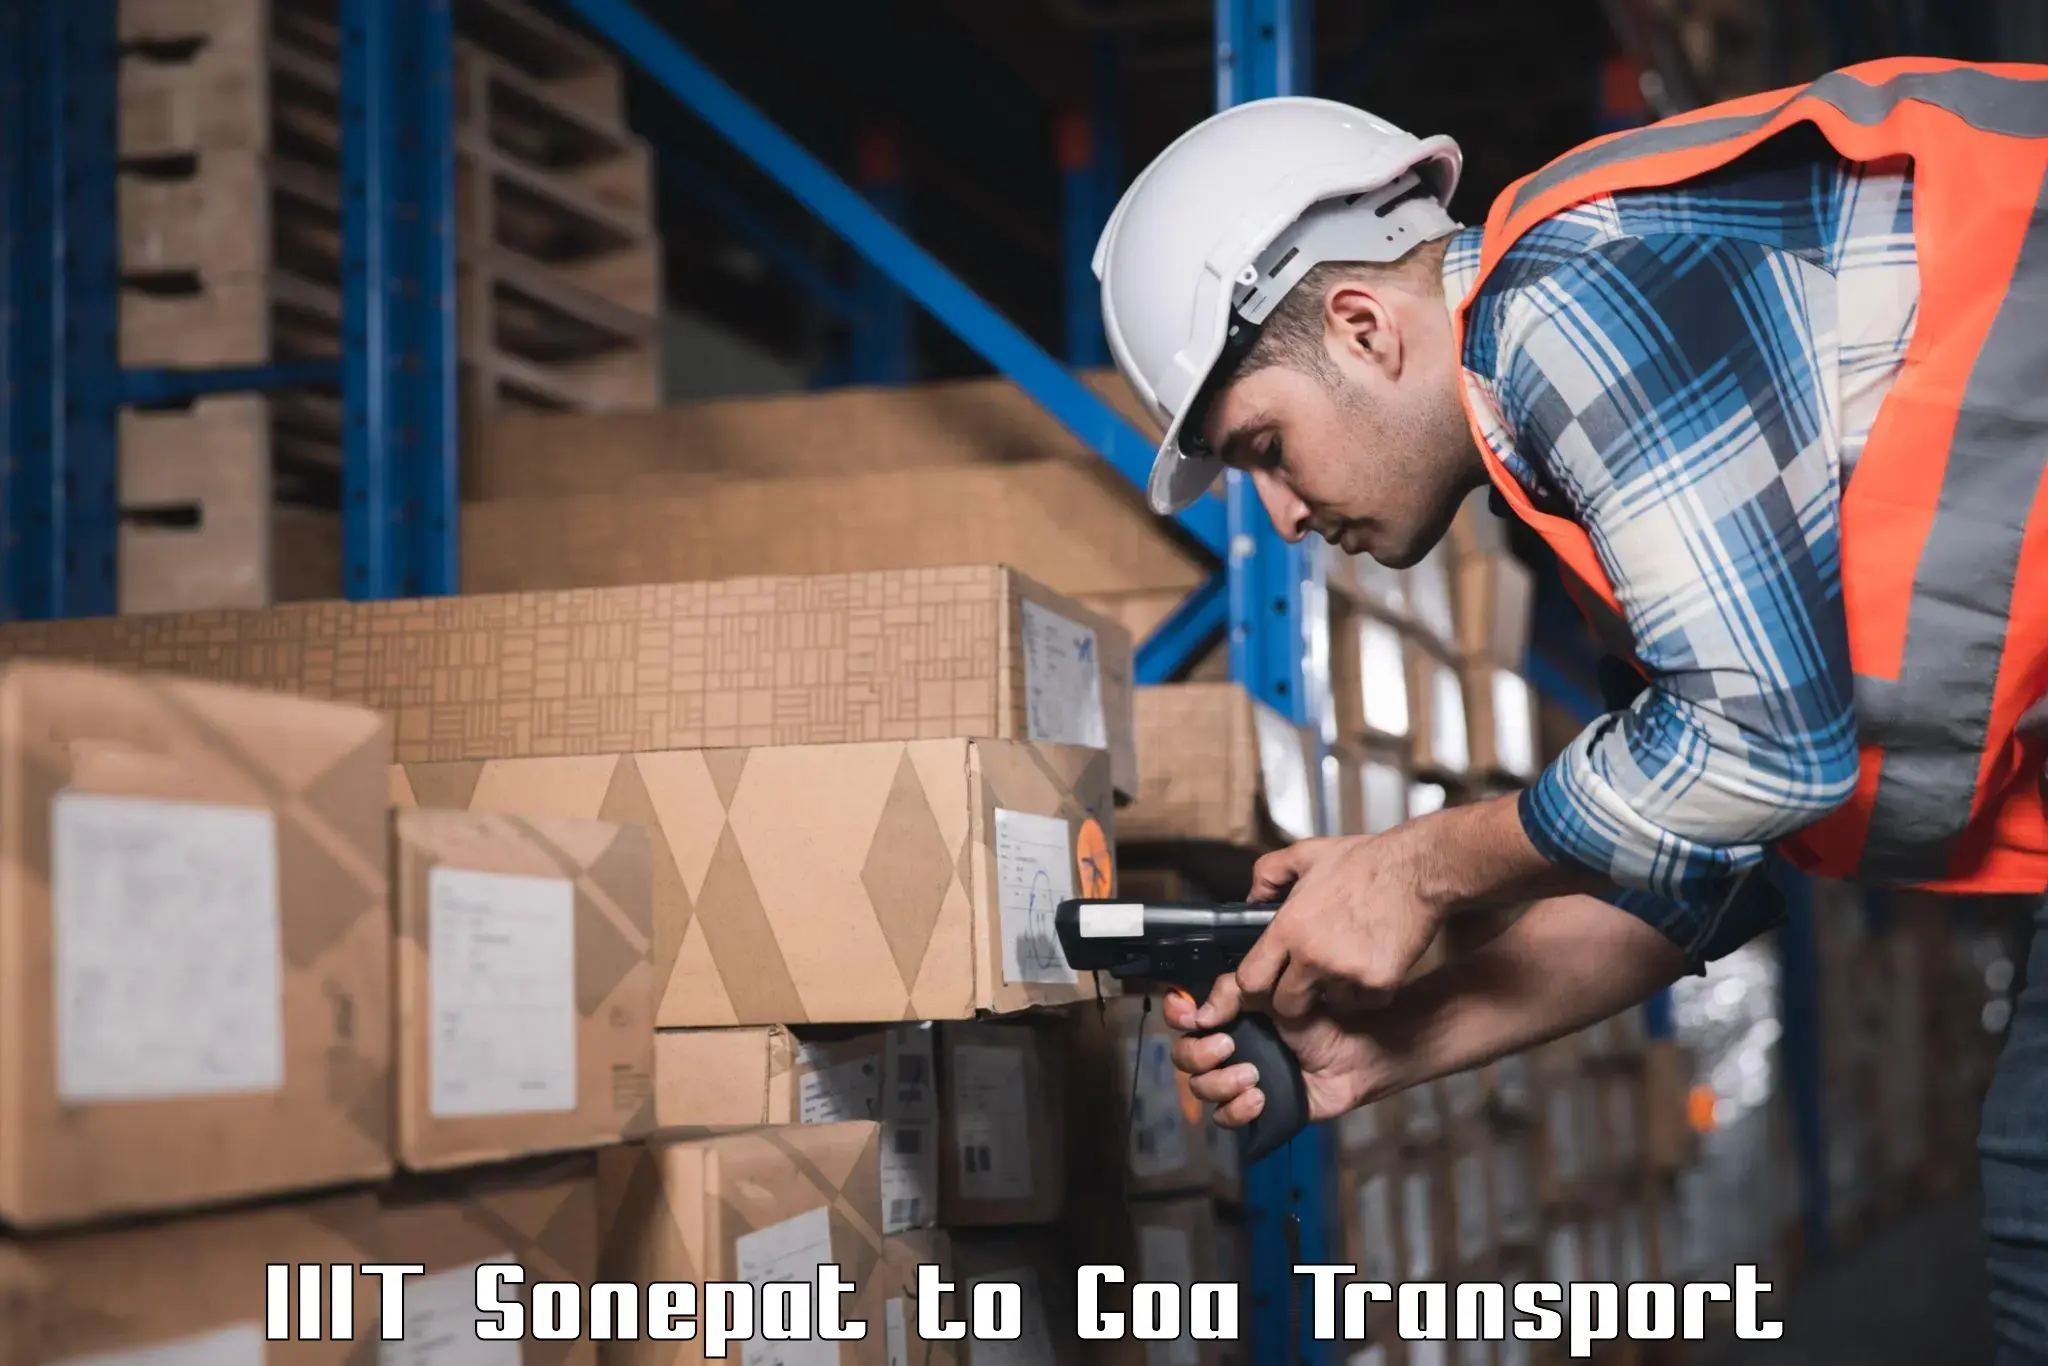 Cargo transport services IIIT Sonepat to IIT Goa